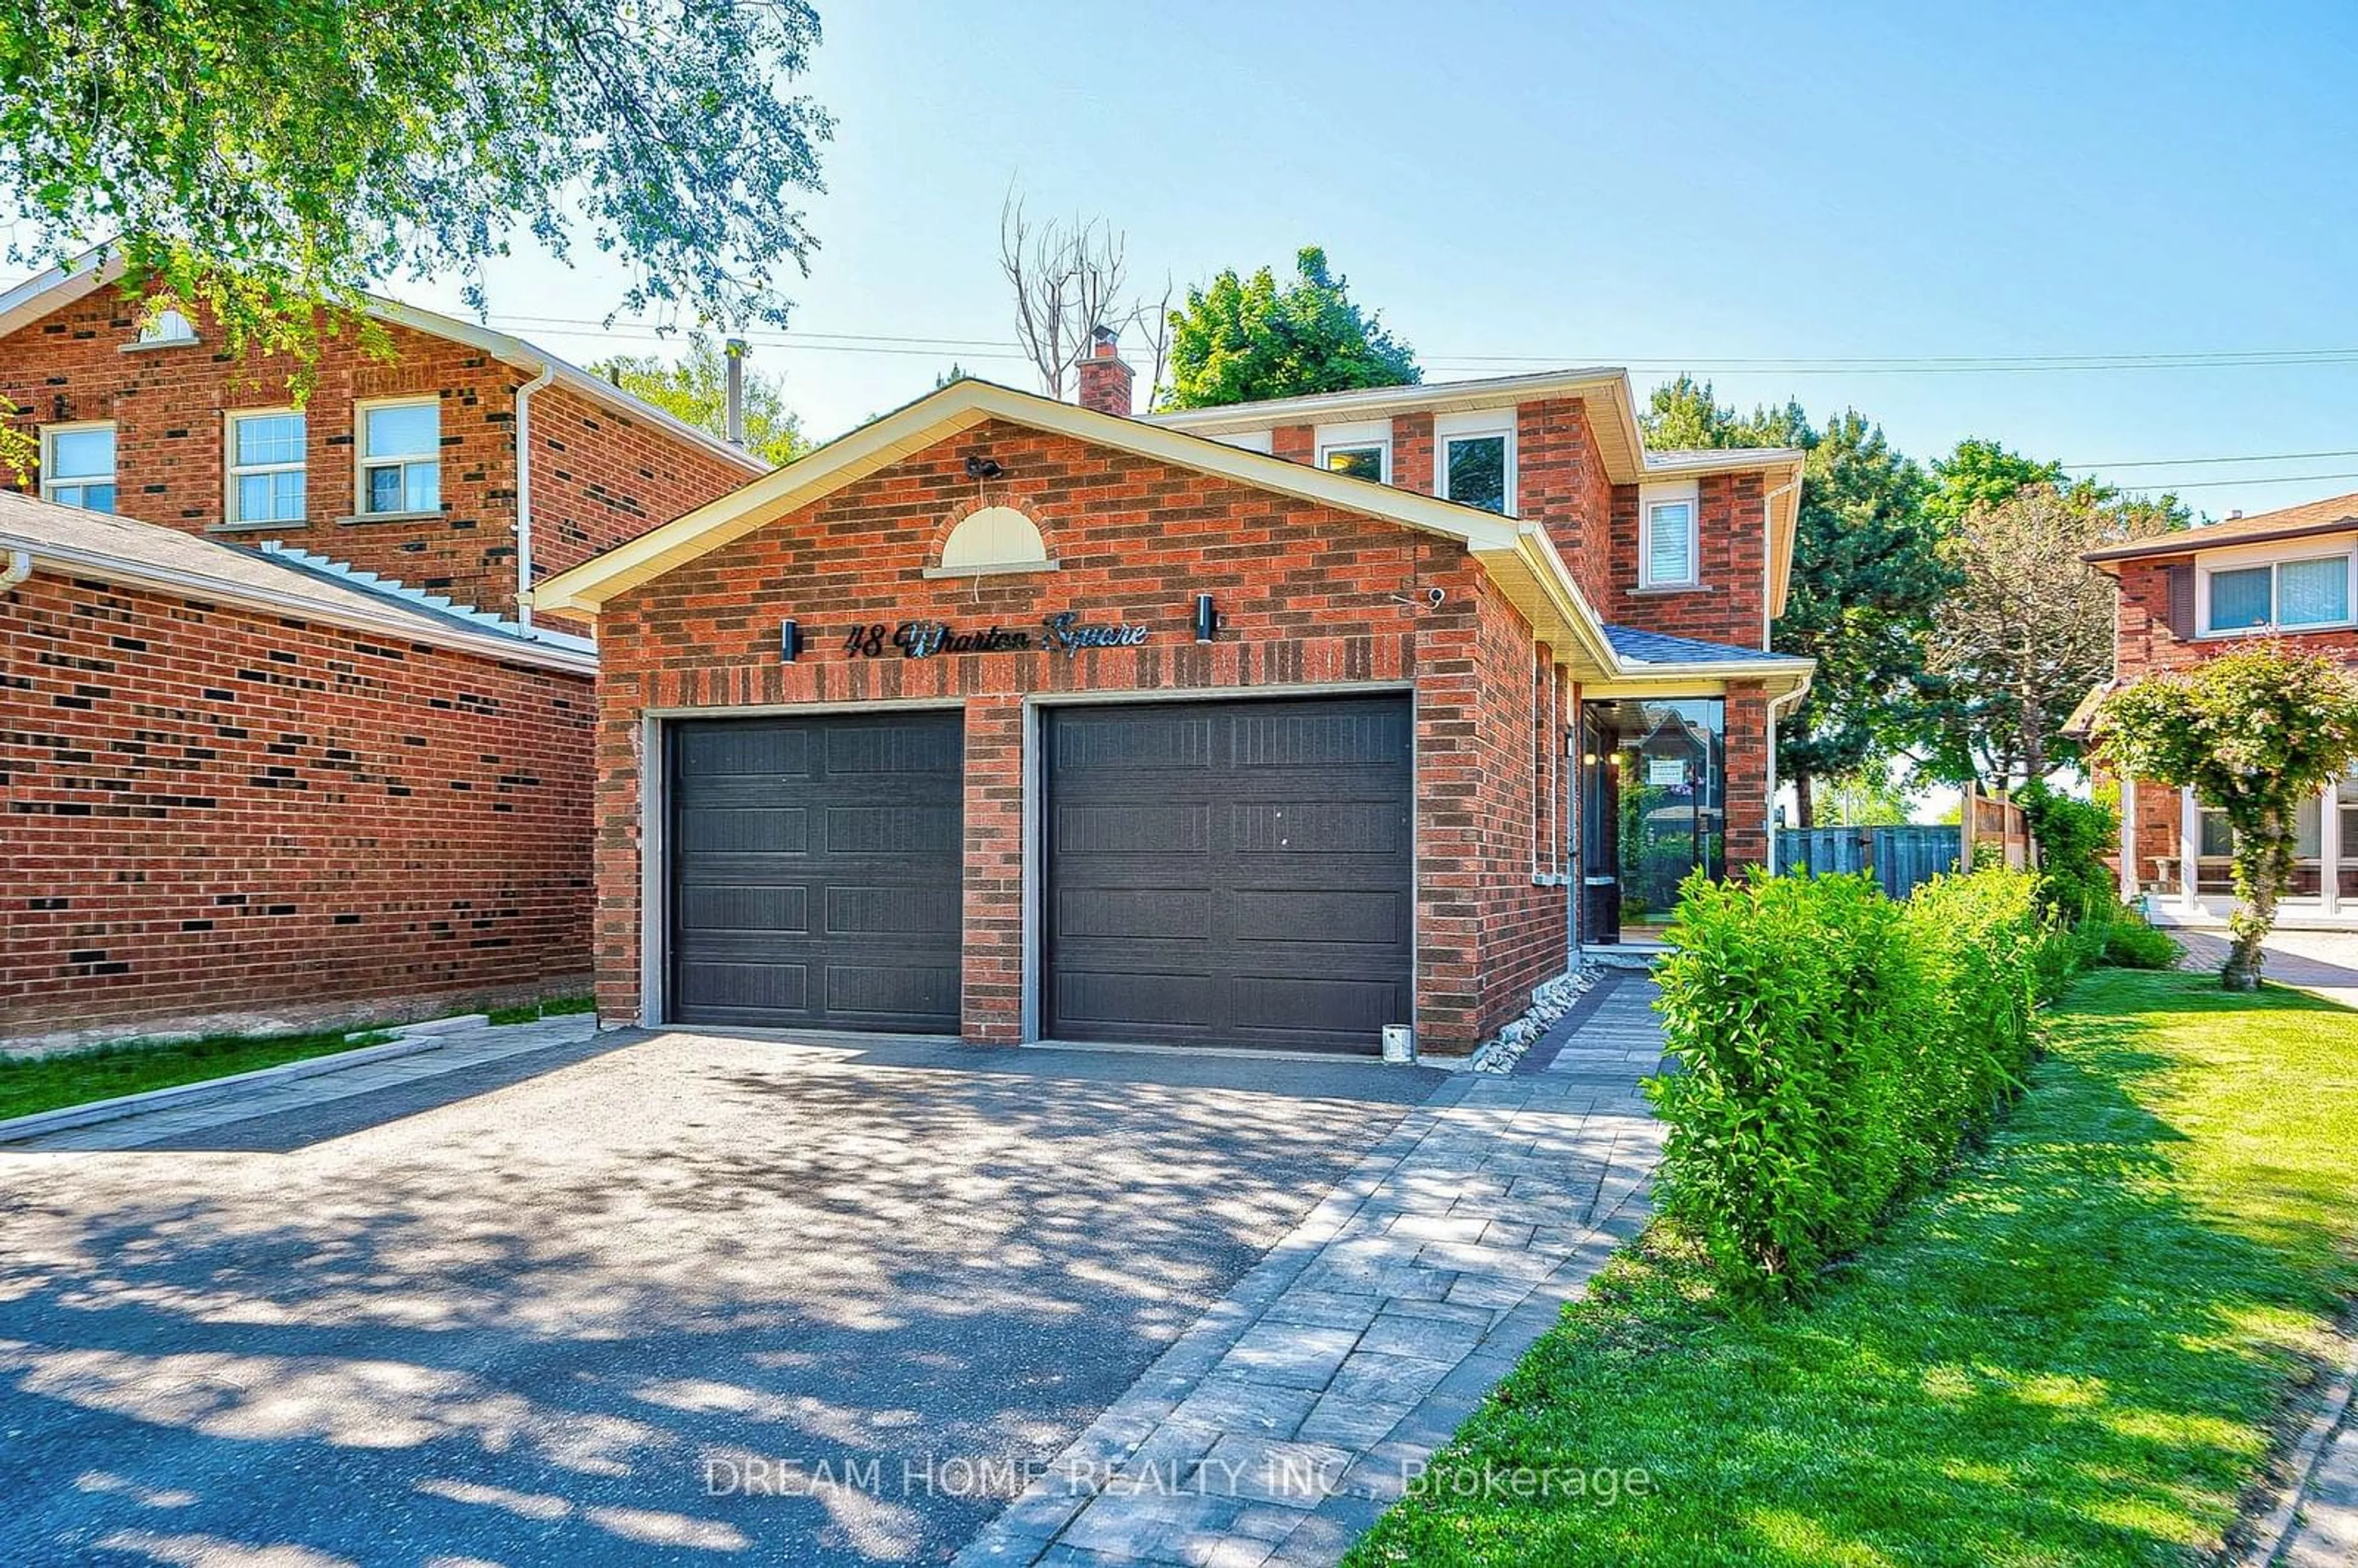 Home with brick exterior material for 48 Wharton Sq, Toronto Ontario M1V 4N5